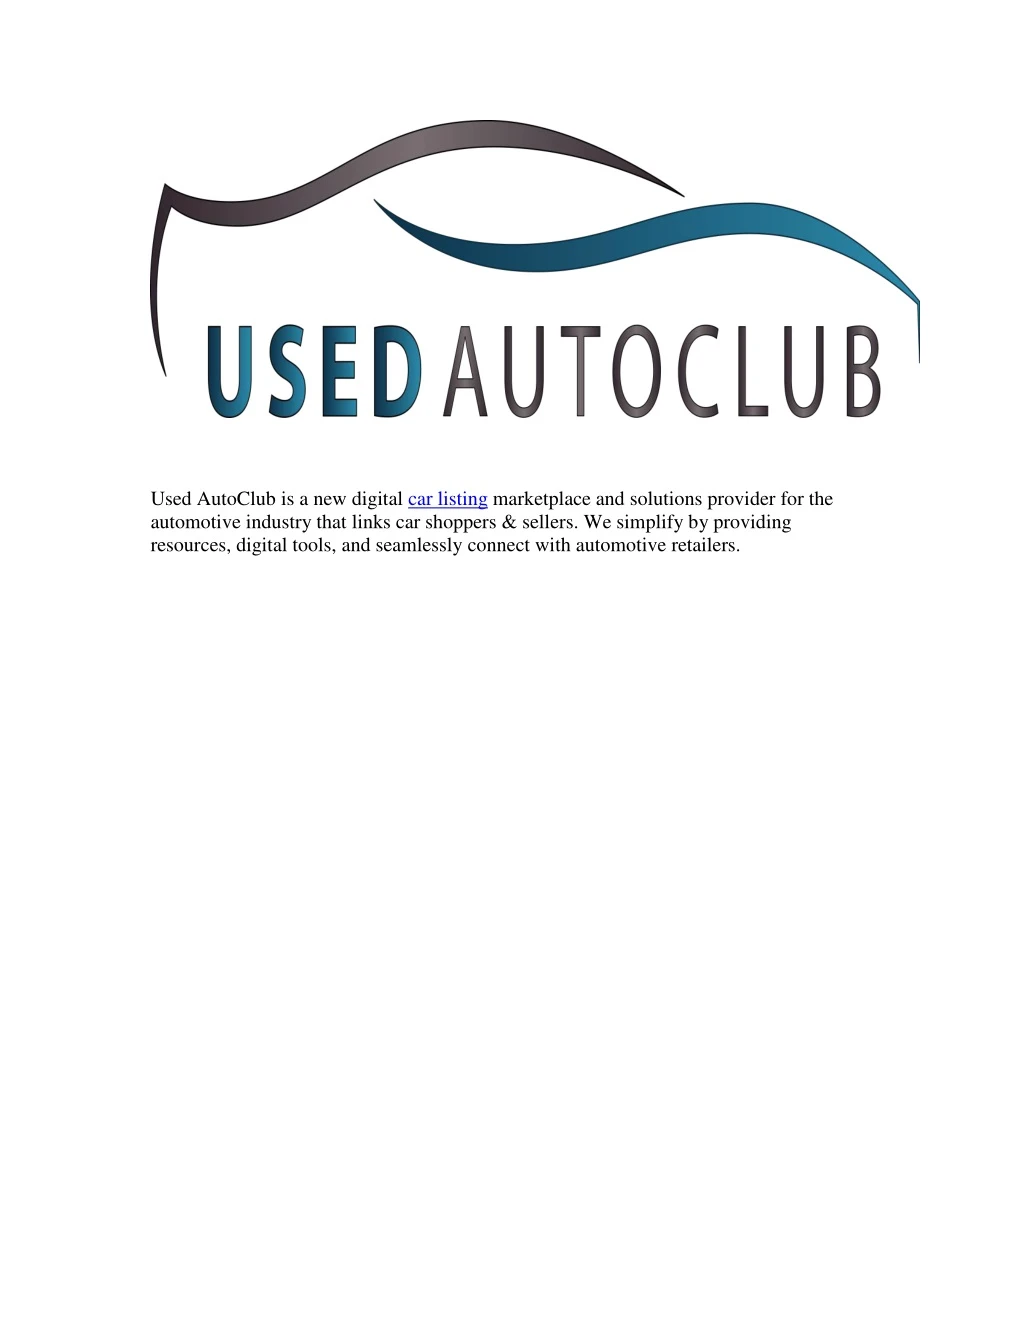 used autoclub is a new digital car listing